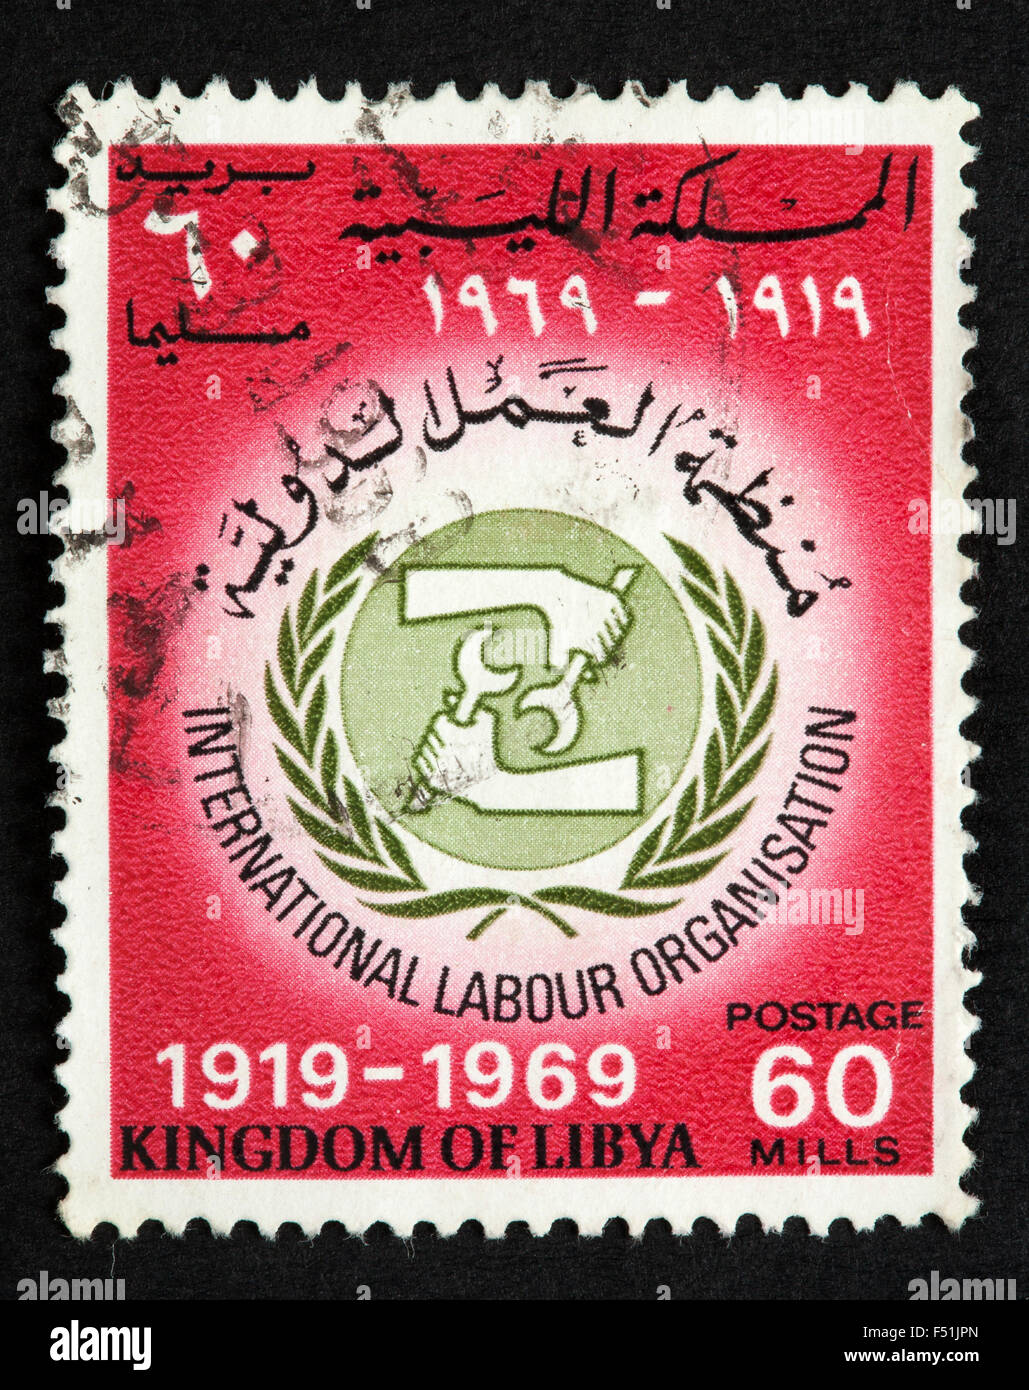 Royaume de Libye timbre-poste Banque D'Images